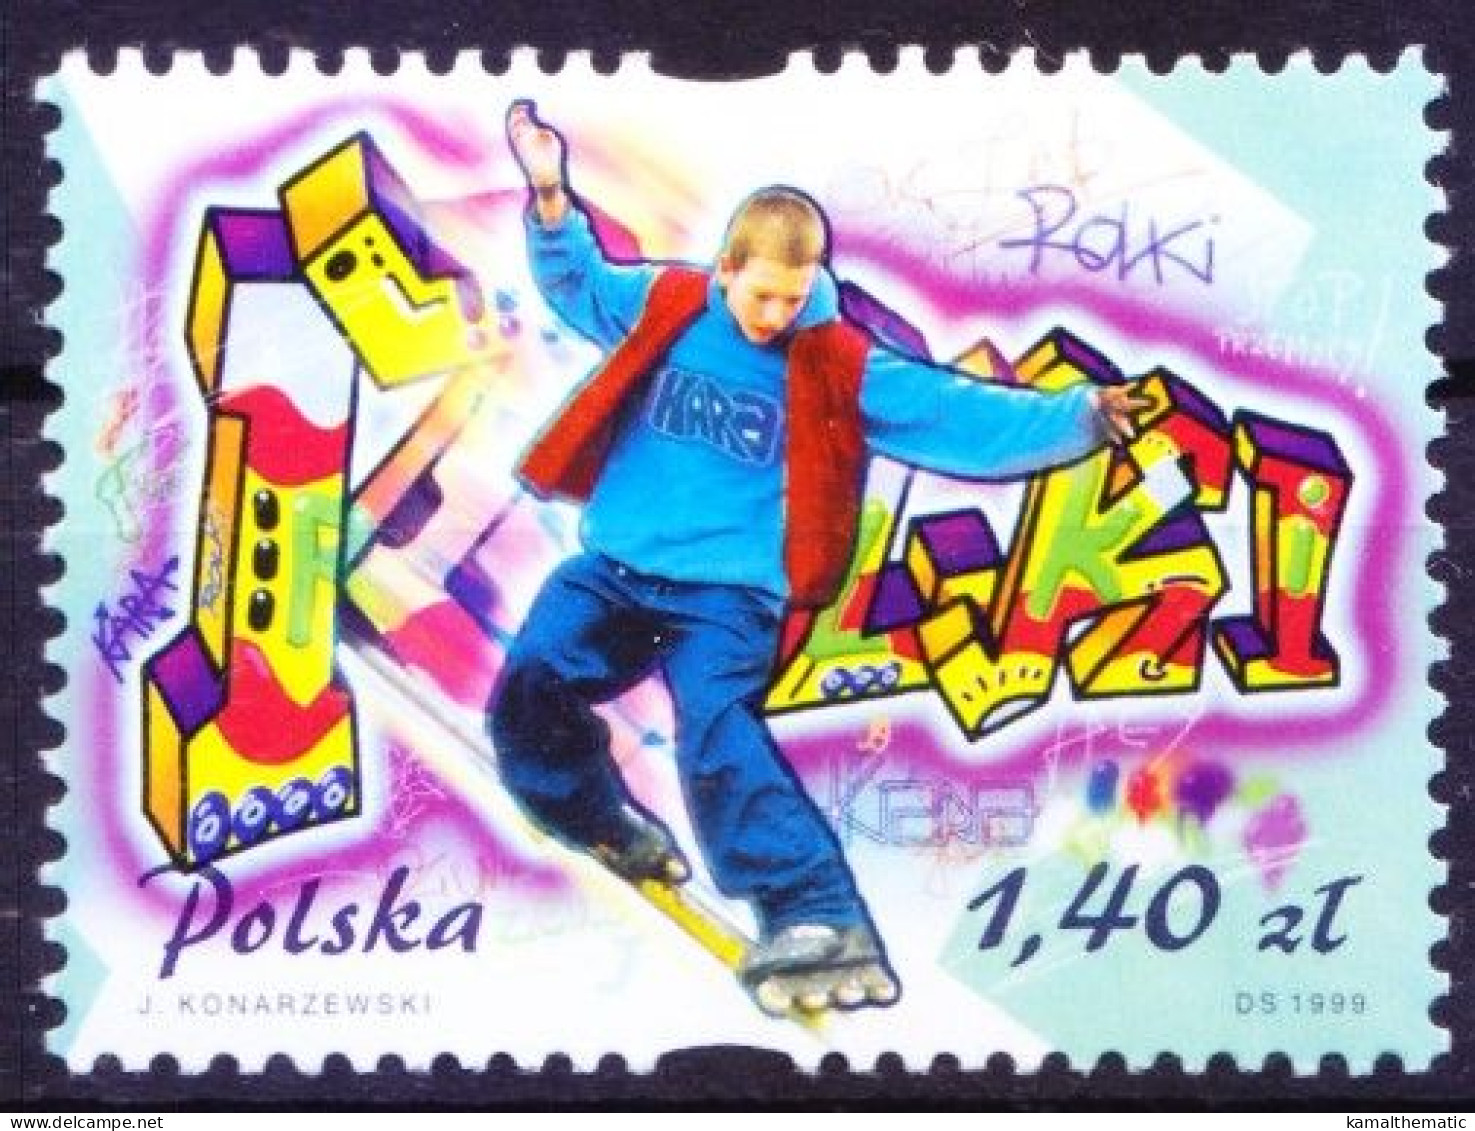 Poland 1999 MNH, Roller Blading, Fun Sports - Skateboard